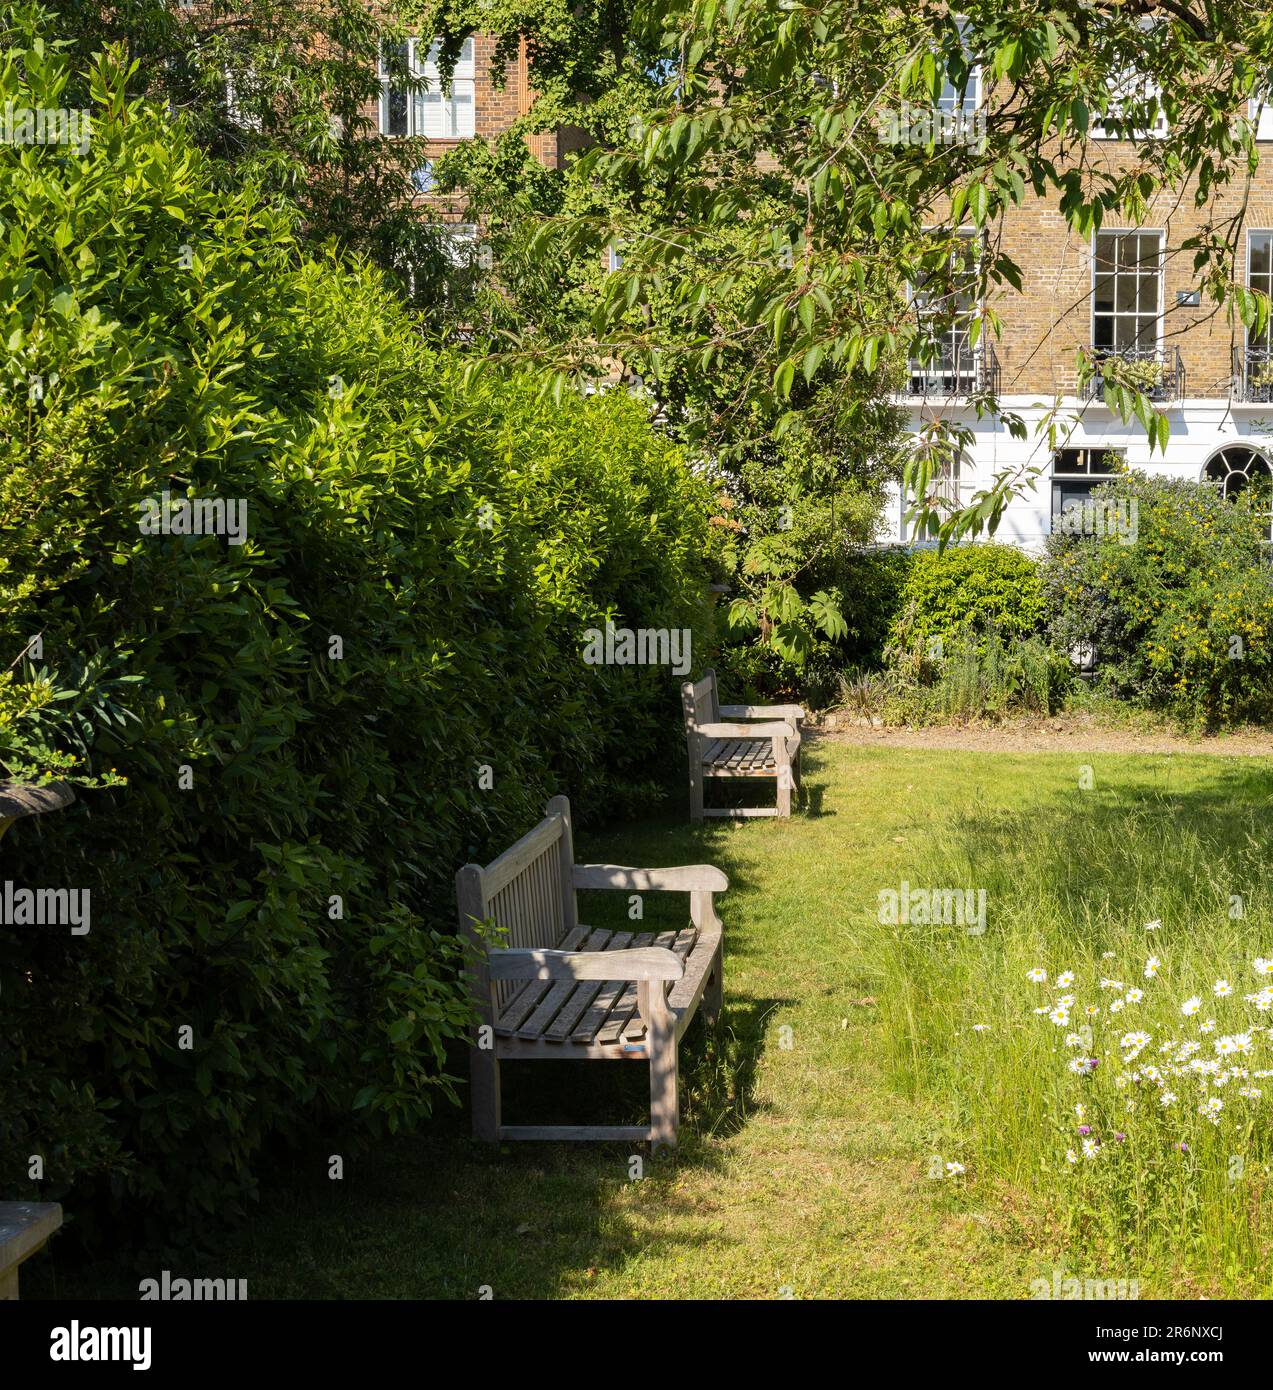 Der Garten des Paultons Square, abseits der Kings Road, Chelsea, London; ein ruhiger, abgeschiedener Gartenplatz mit Bänken und Bäumen über dem Rasen Stockfoto